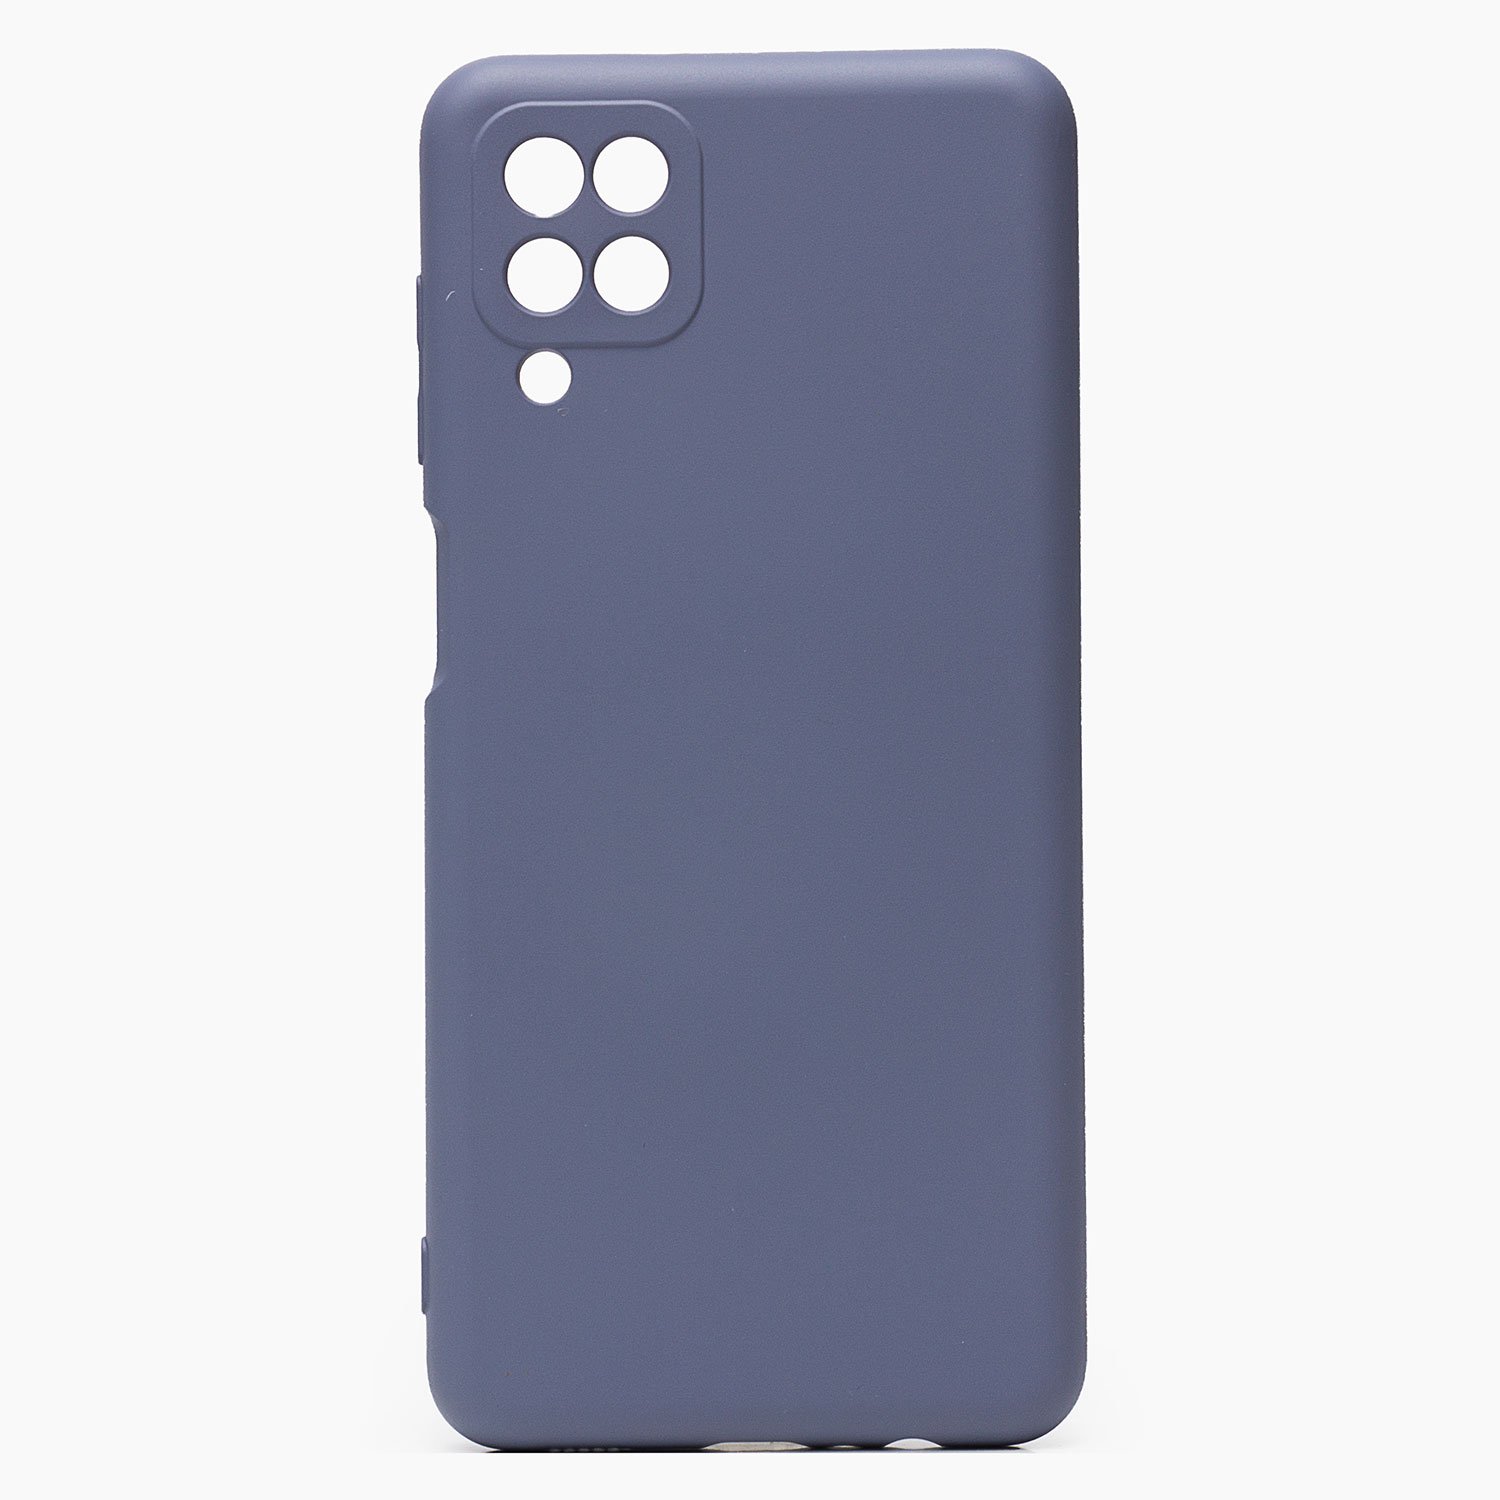 Чехол-накладка Activ Full Original Design для смартфона Samsung SM-A125 Galaxy A12, силикон, серый